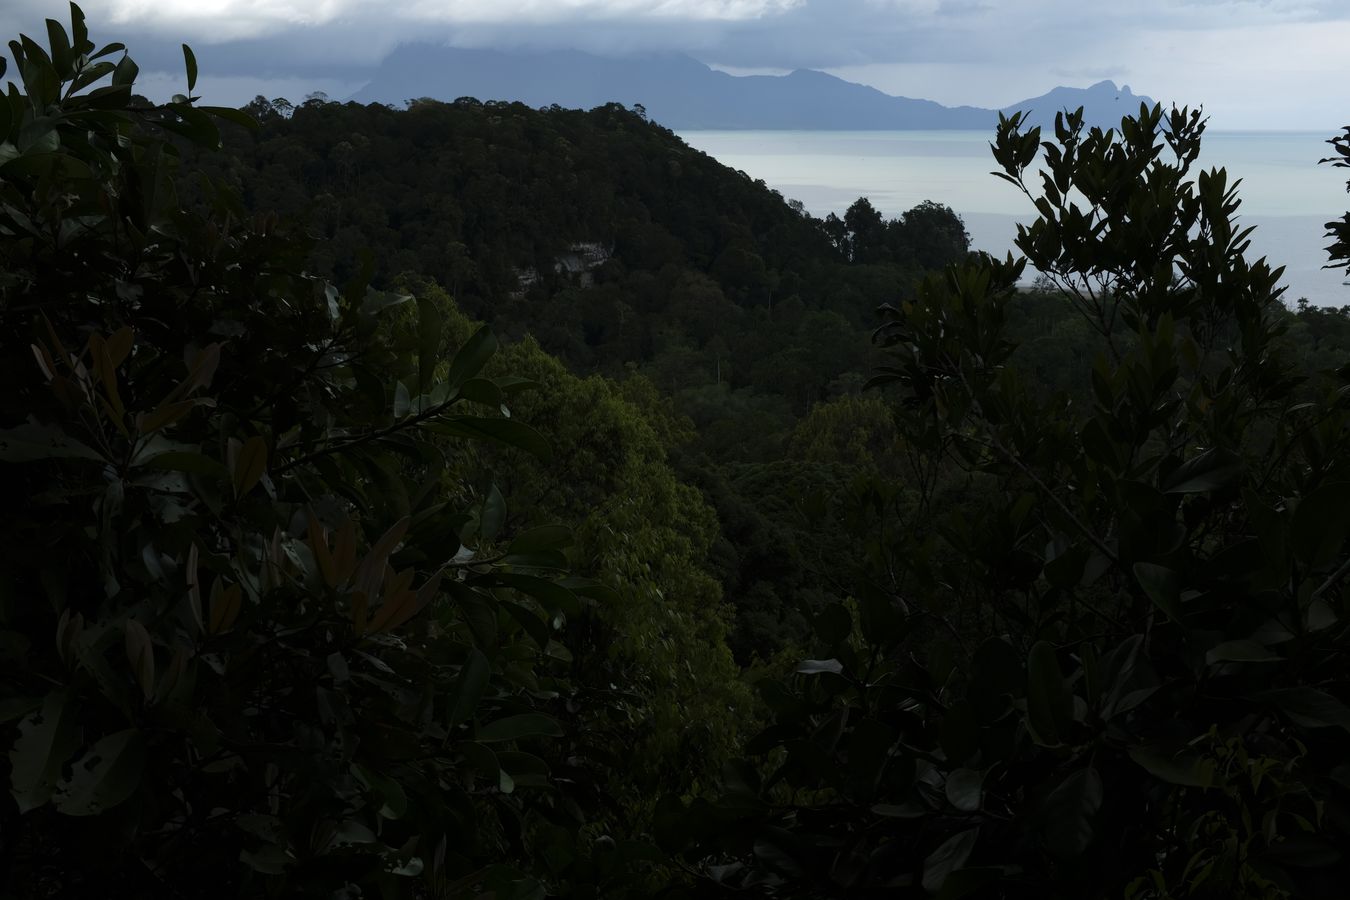 Rainforest View and landscape